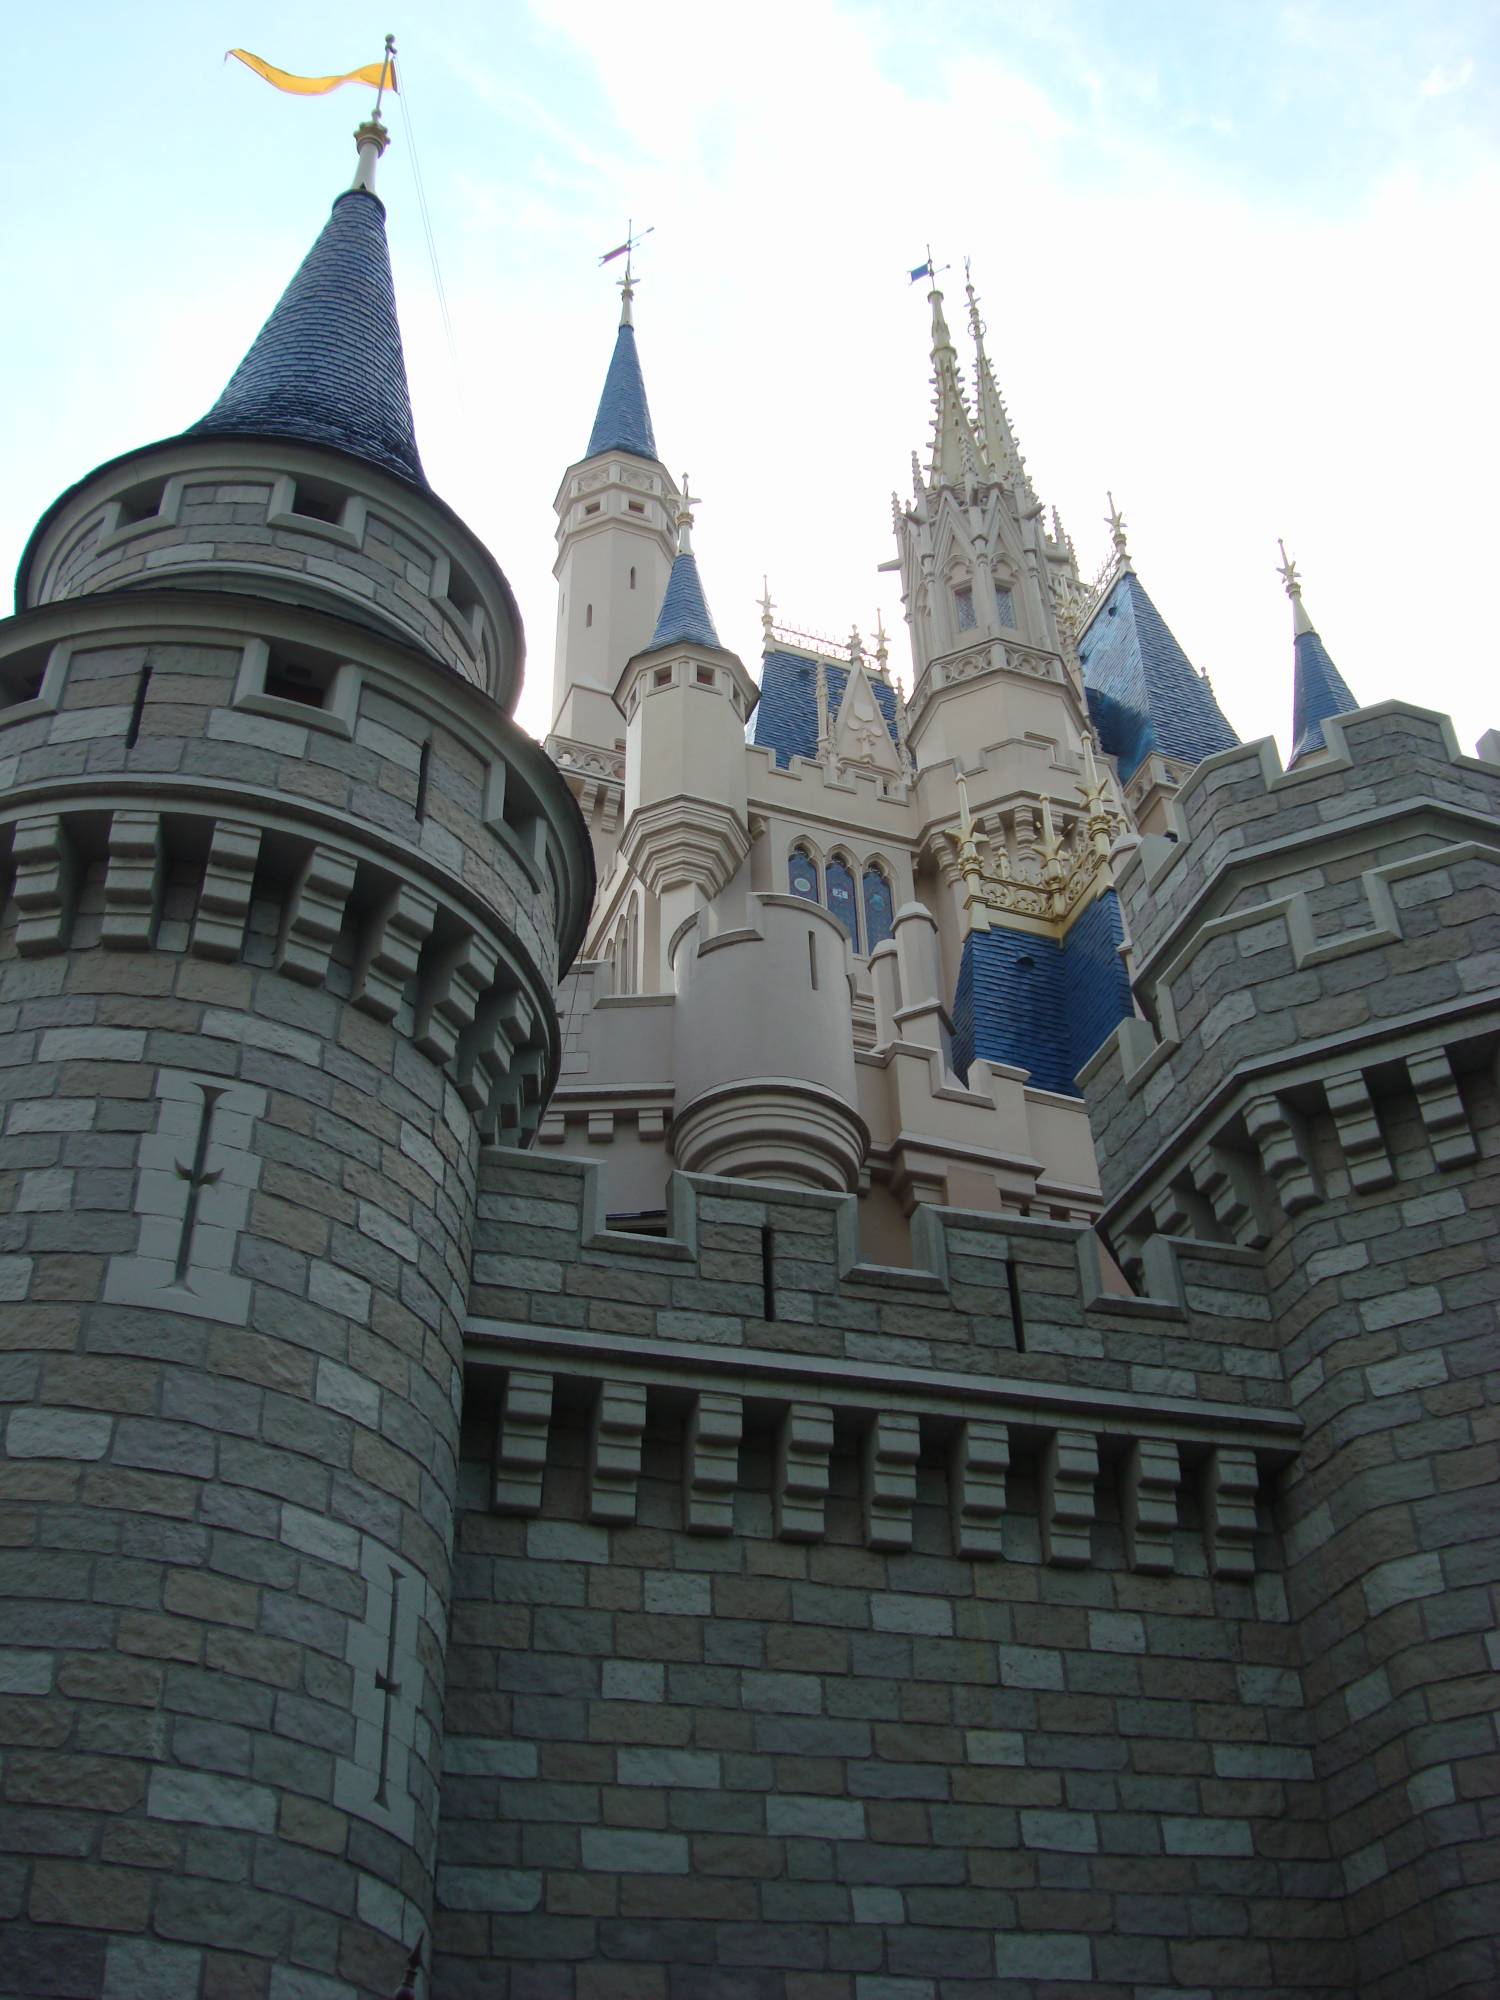 Magic Kingdom - Cinderella Castle spires